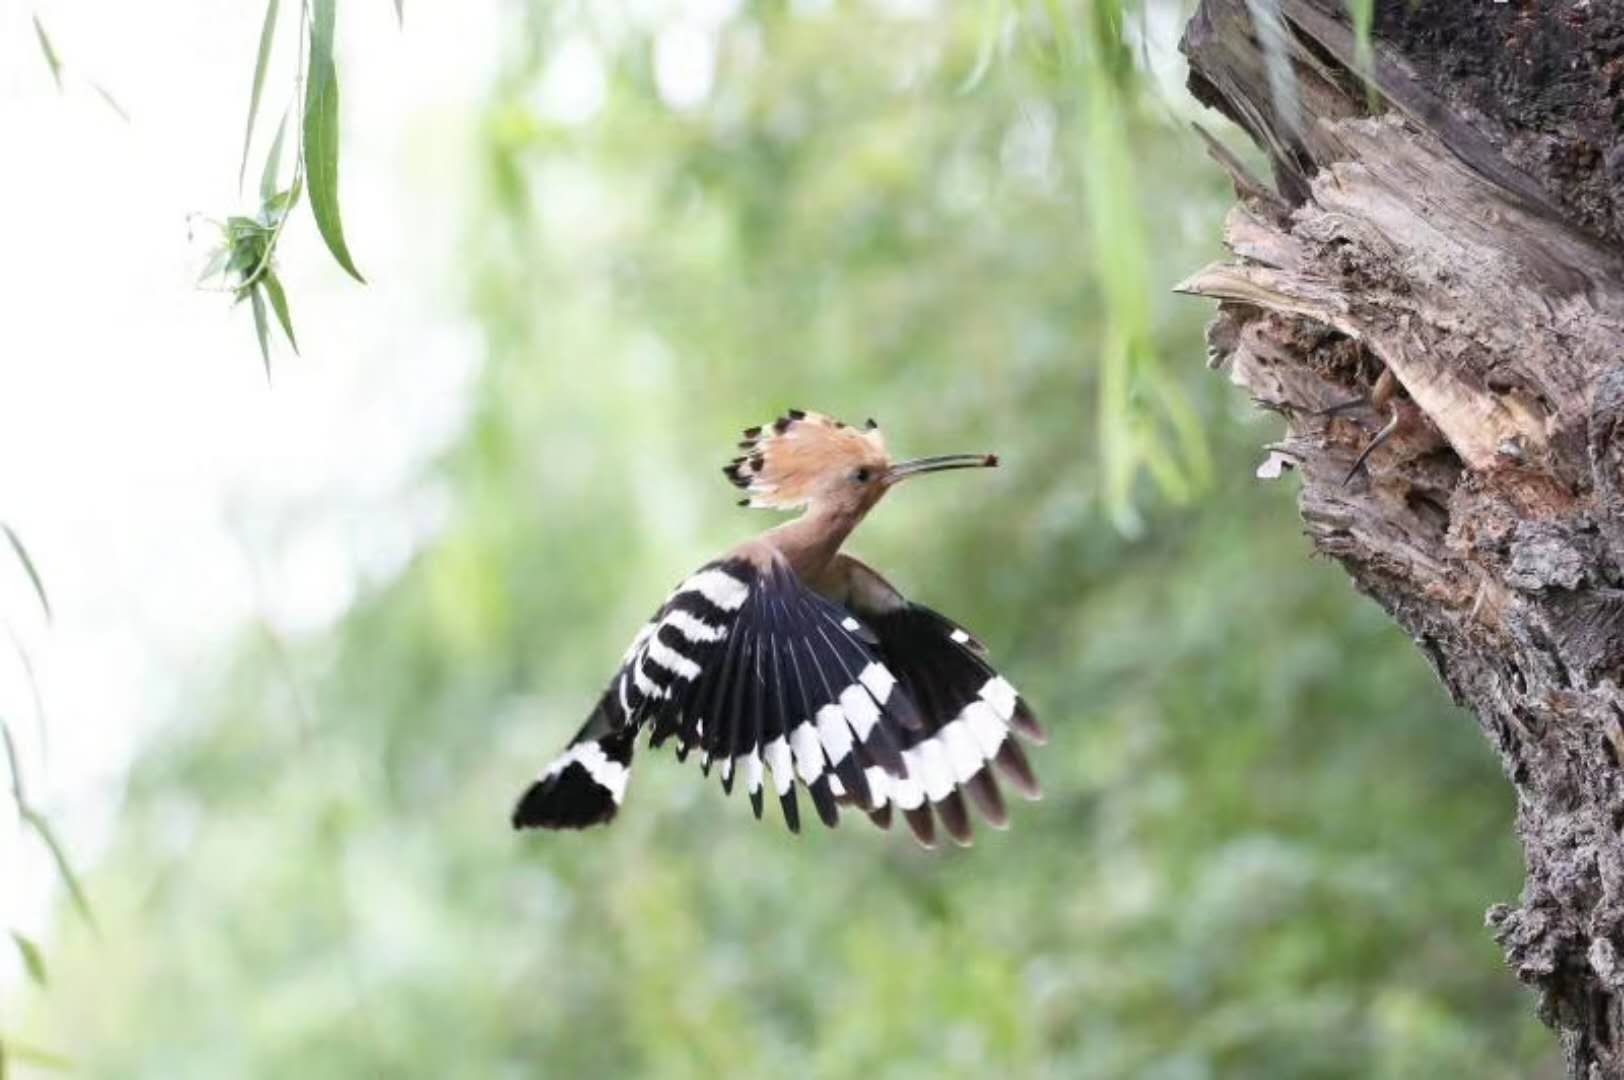 有谁知道这种头上长小扇的鸟的学名叫啥?是啄木鸟吗?